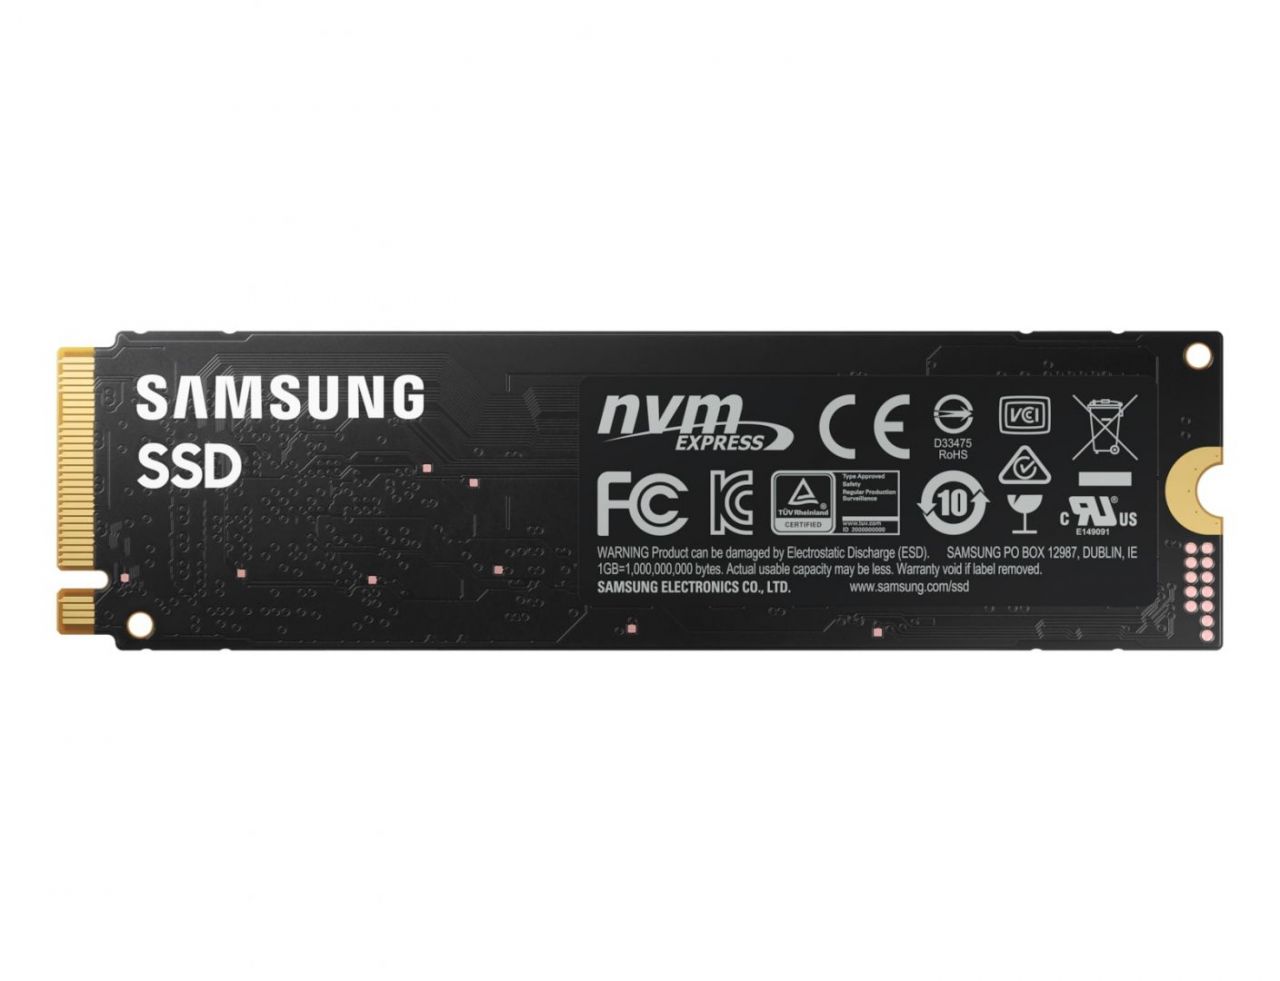 Samsung 1TB M.2 2280 NVMe 980 Basic